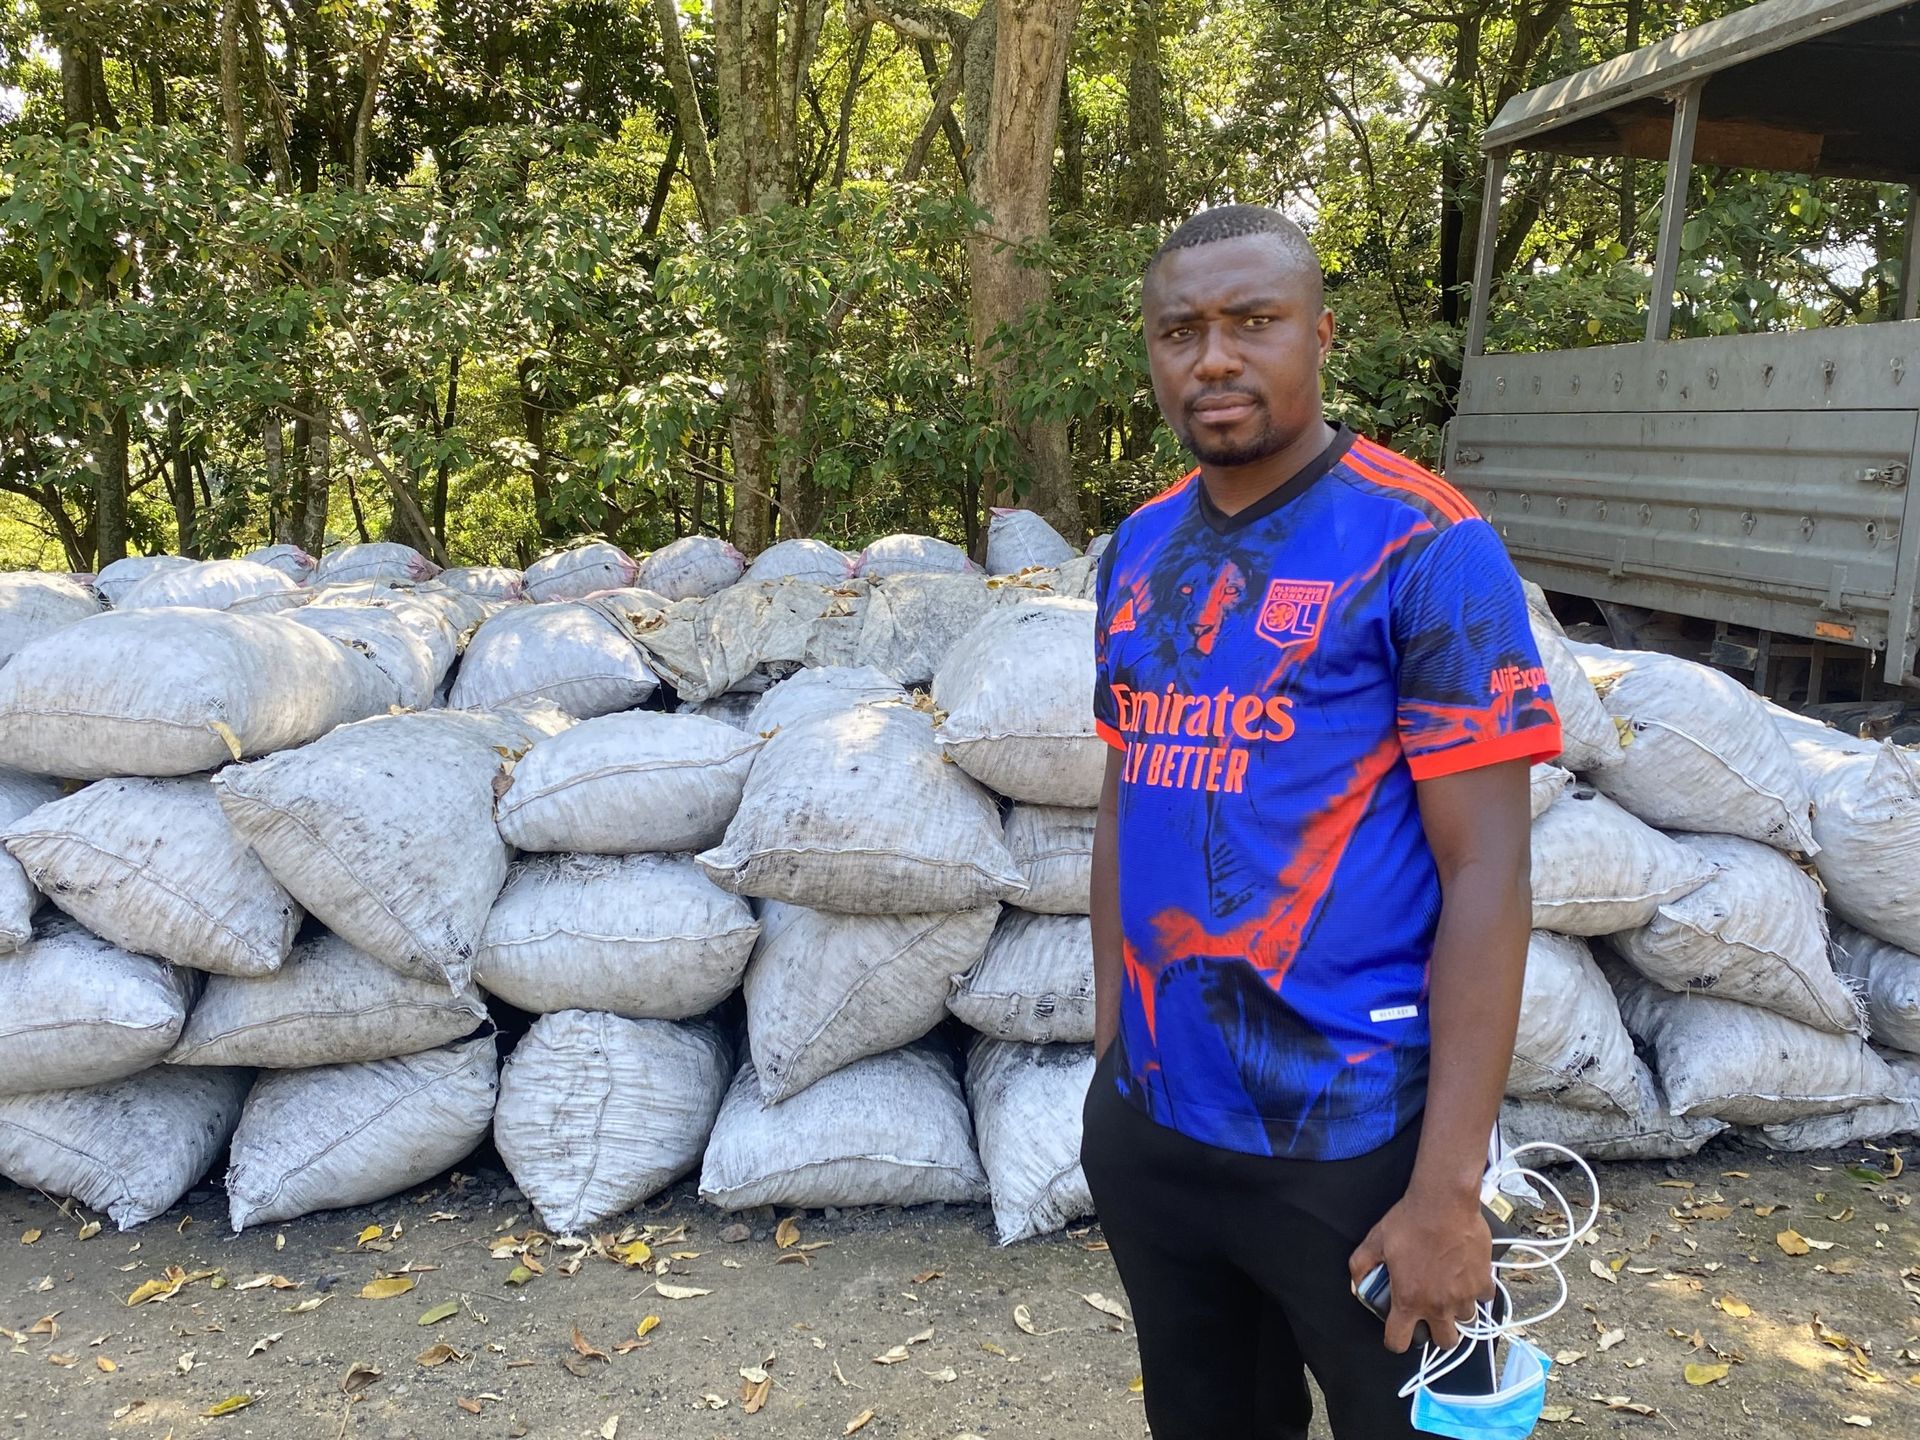 "Là, il y a 270 sacs de makala", explique Emmanuel Baati Lukoo, responsable du secteur sud du Parc des Virunga, en désignant le grand tas de sacs de toile blanche.